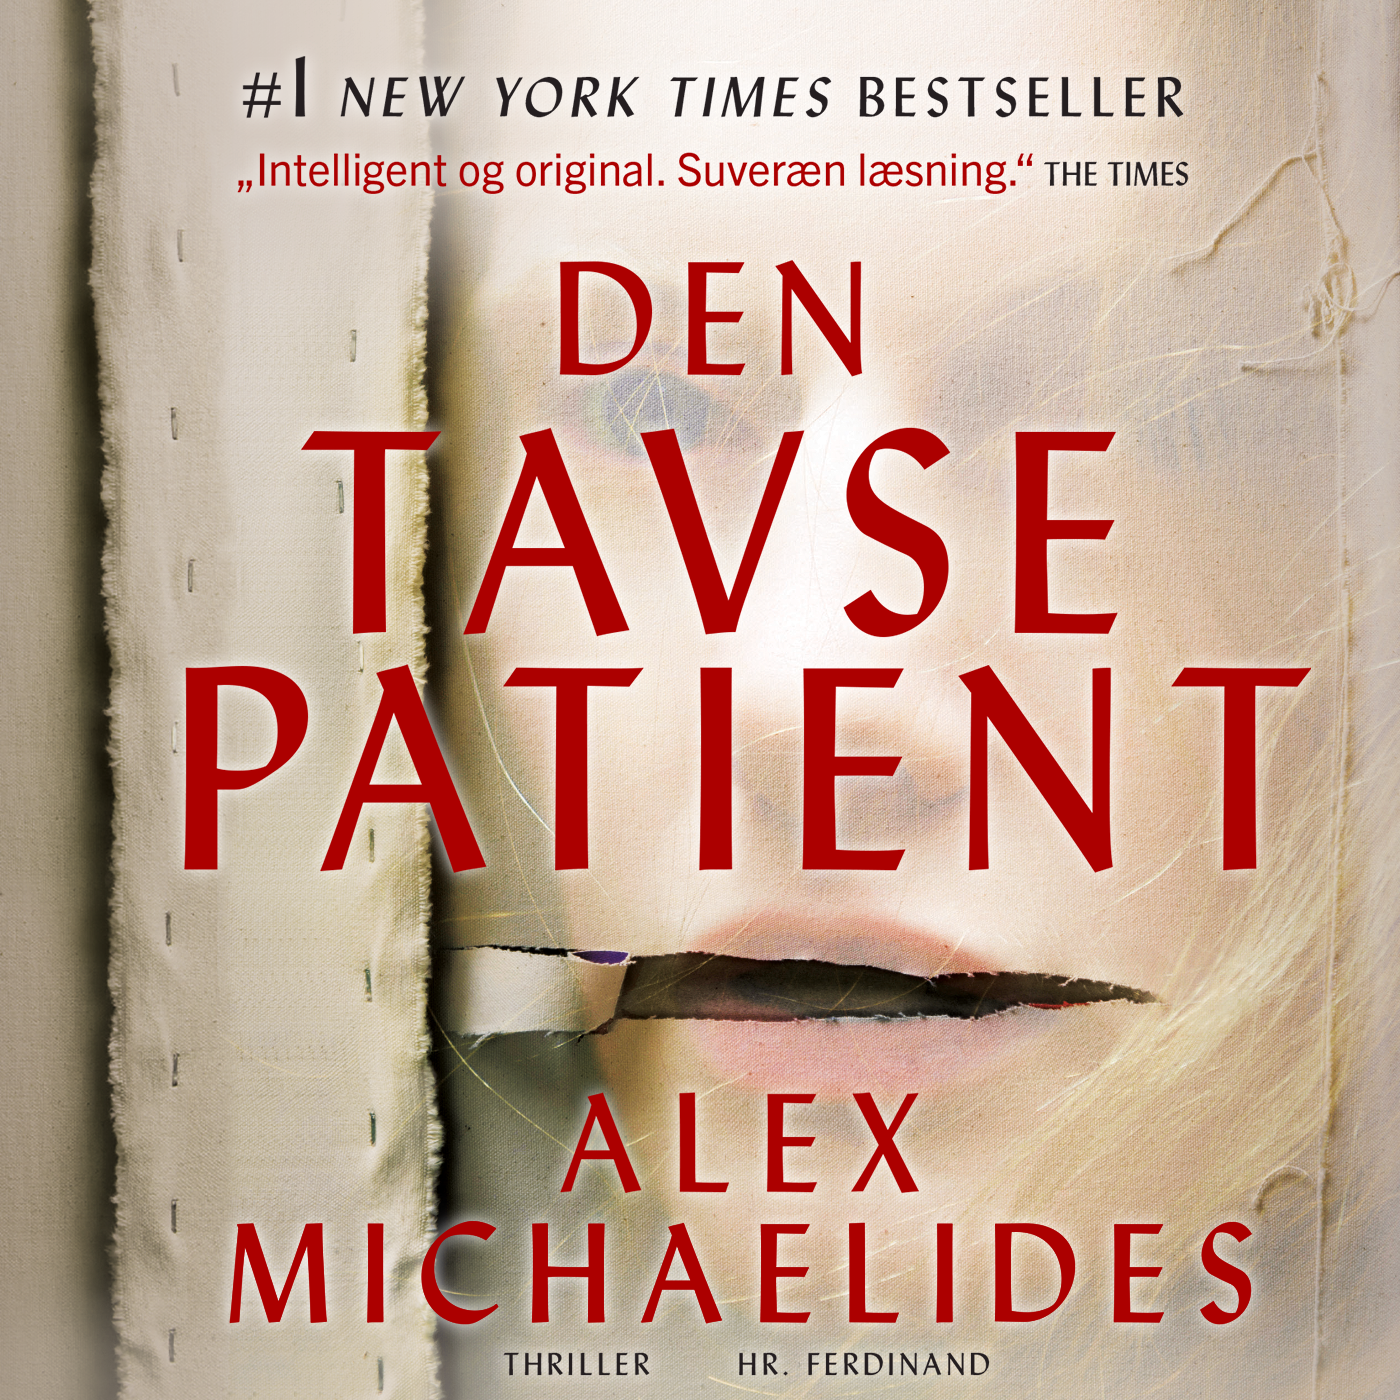 Den tavse patient, audiobook by Alex Michaelides